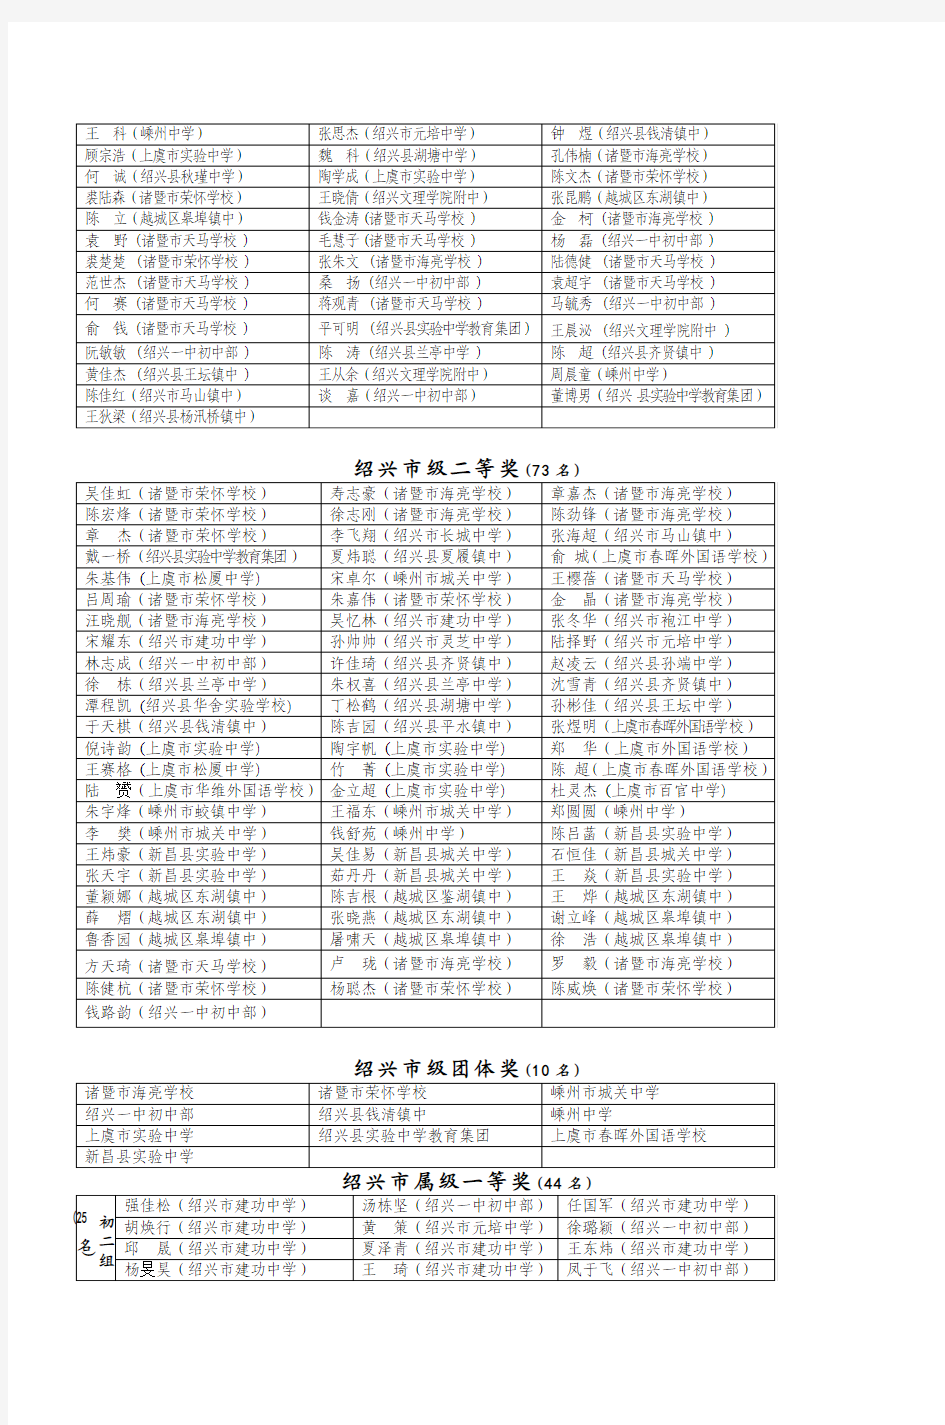 2008年全国初中数学竞赛(浙江赛区)